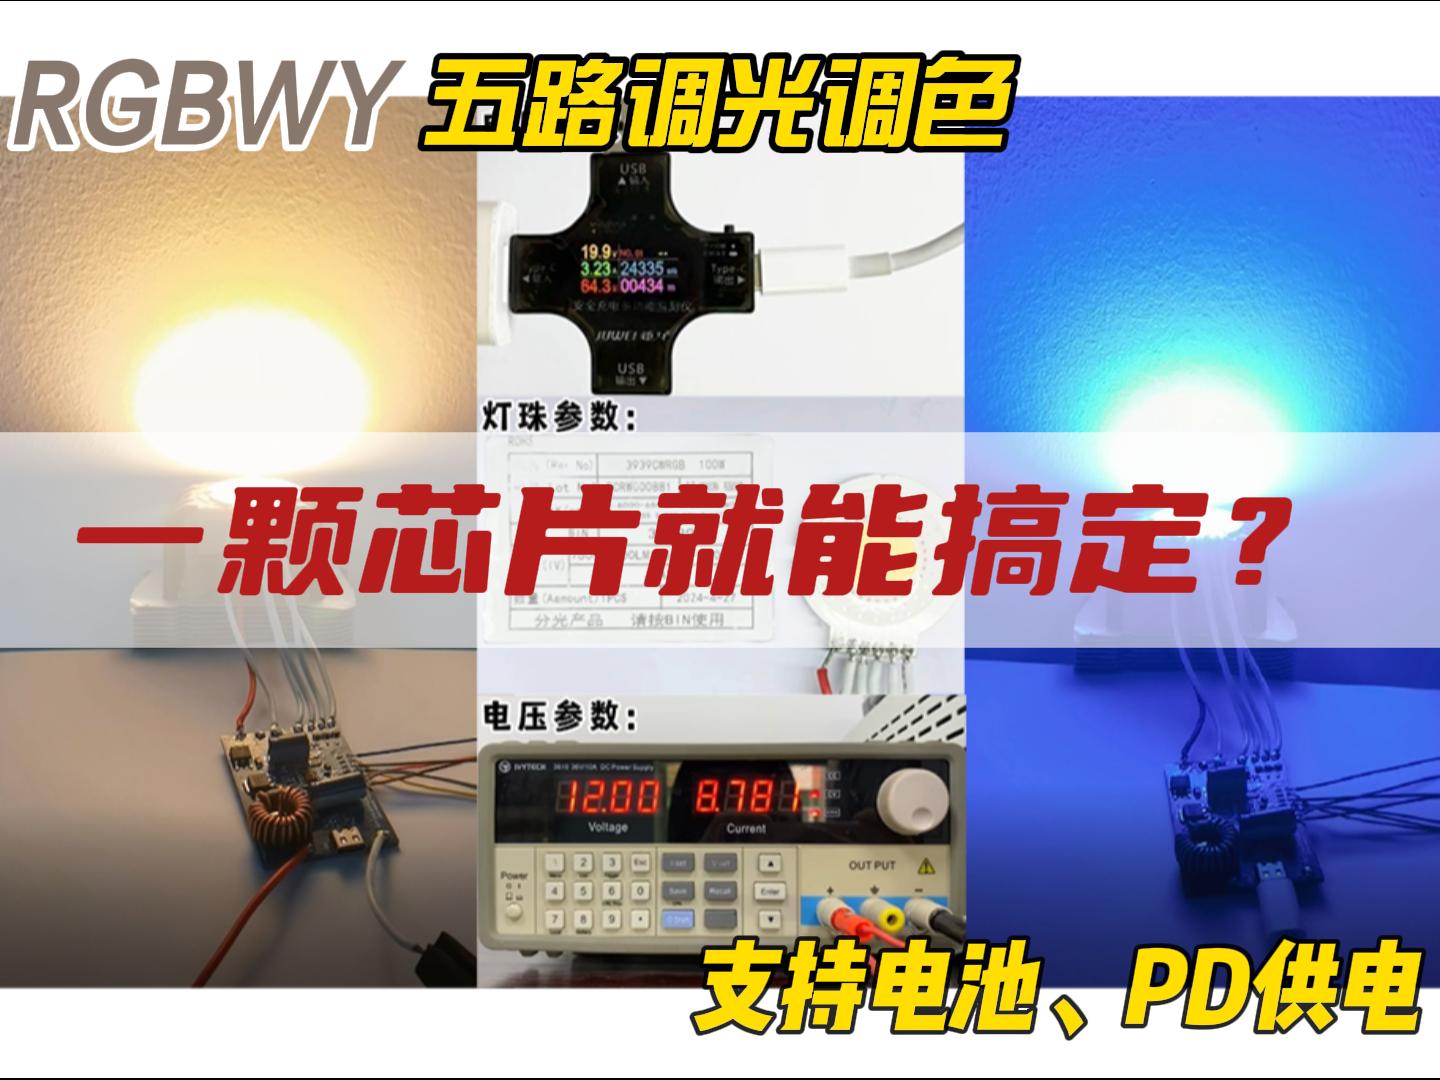 【FP7208-RGBWY五路调光方案】PWM内部转模拟调光，无频闪顾虑低亮无抖动# #电路知识 #电路原理 